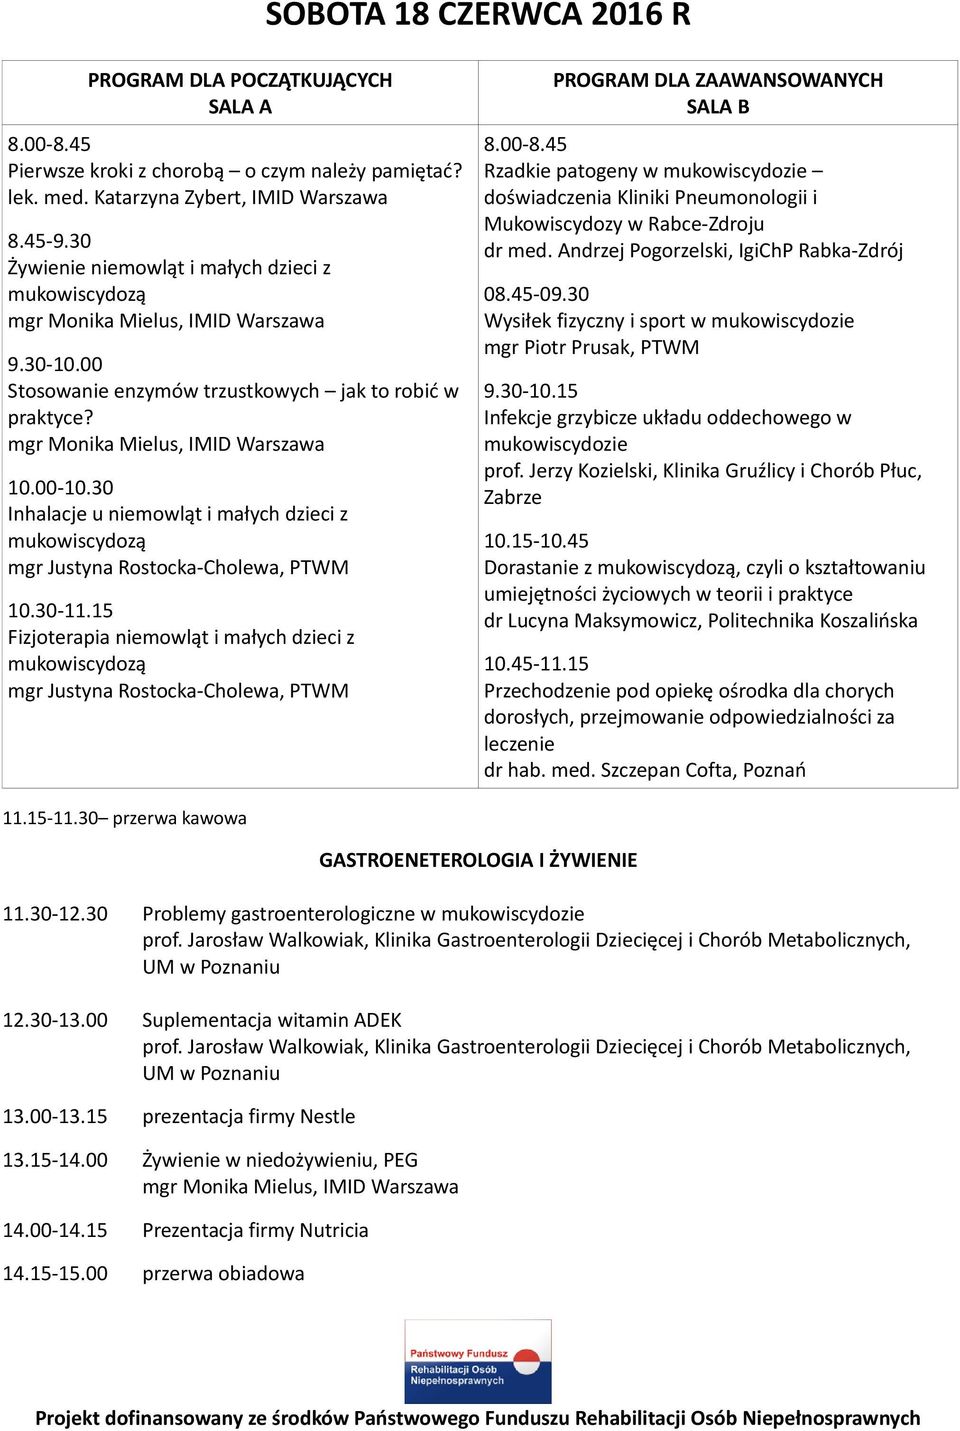 30-11.15 Fizjoterapia niemowląt i małych dzieci z mgr Justyna Rostocka-Cholewa, PTWM PROGRAM DLA ZAAWANSOWANYCH SALA B 8.00-8.